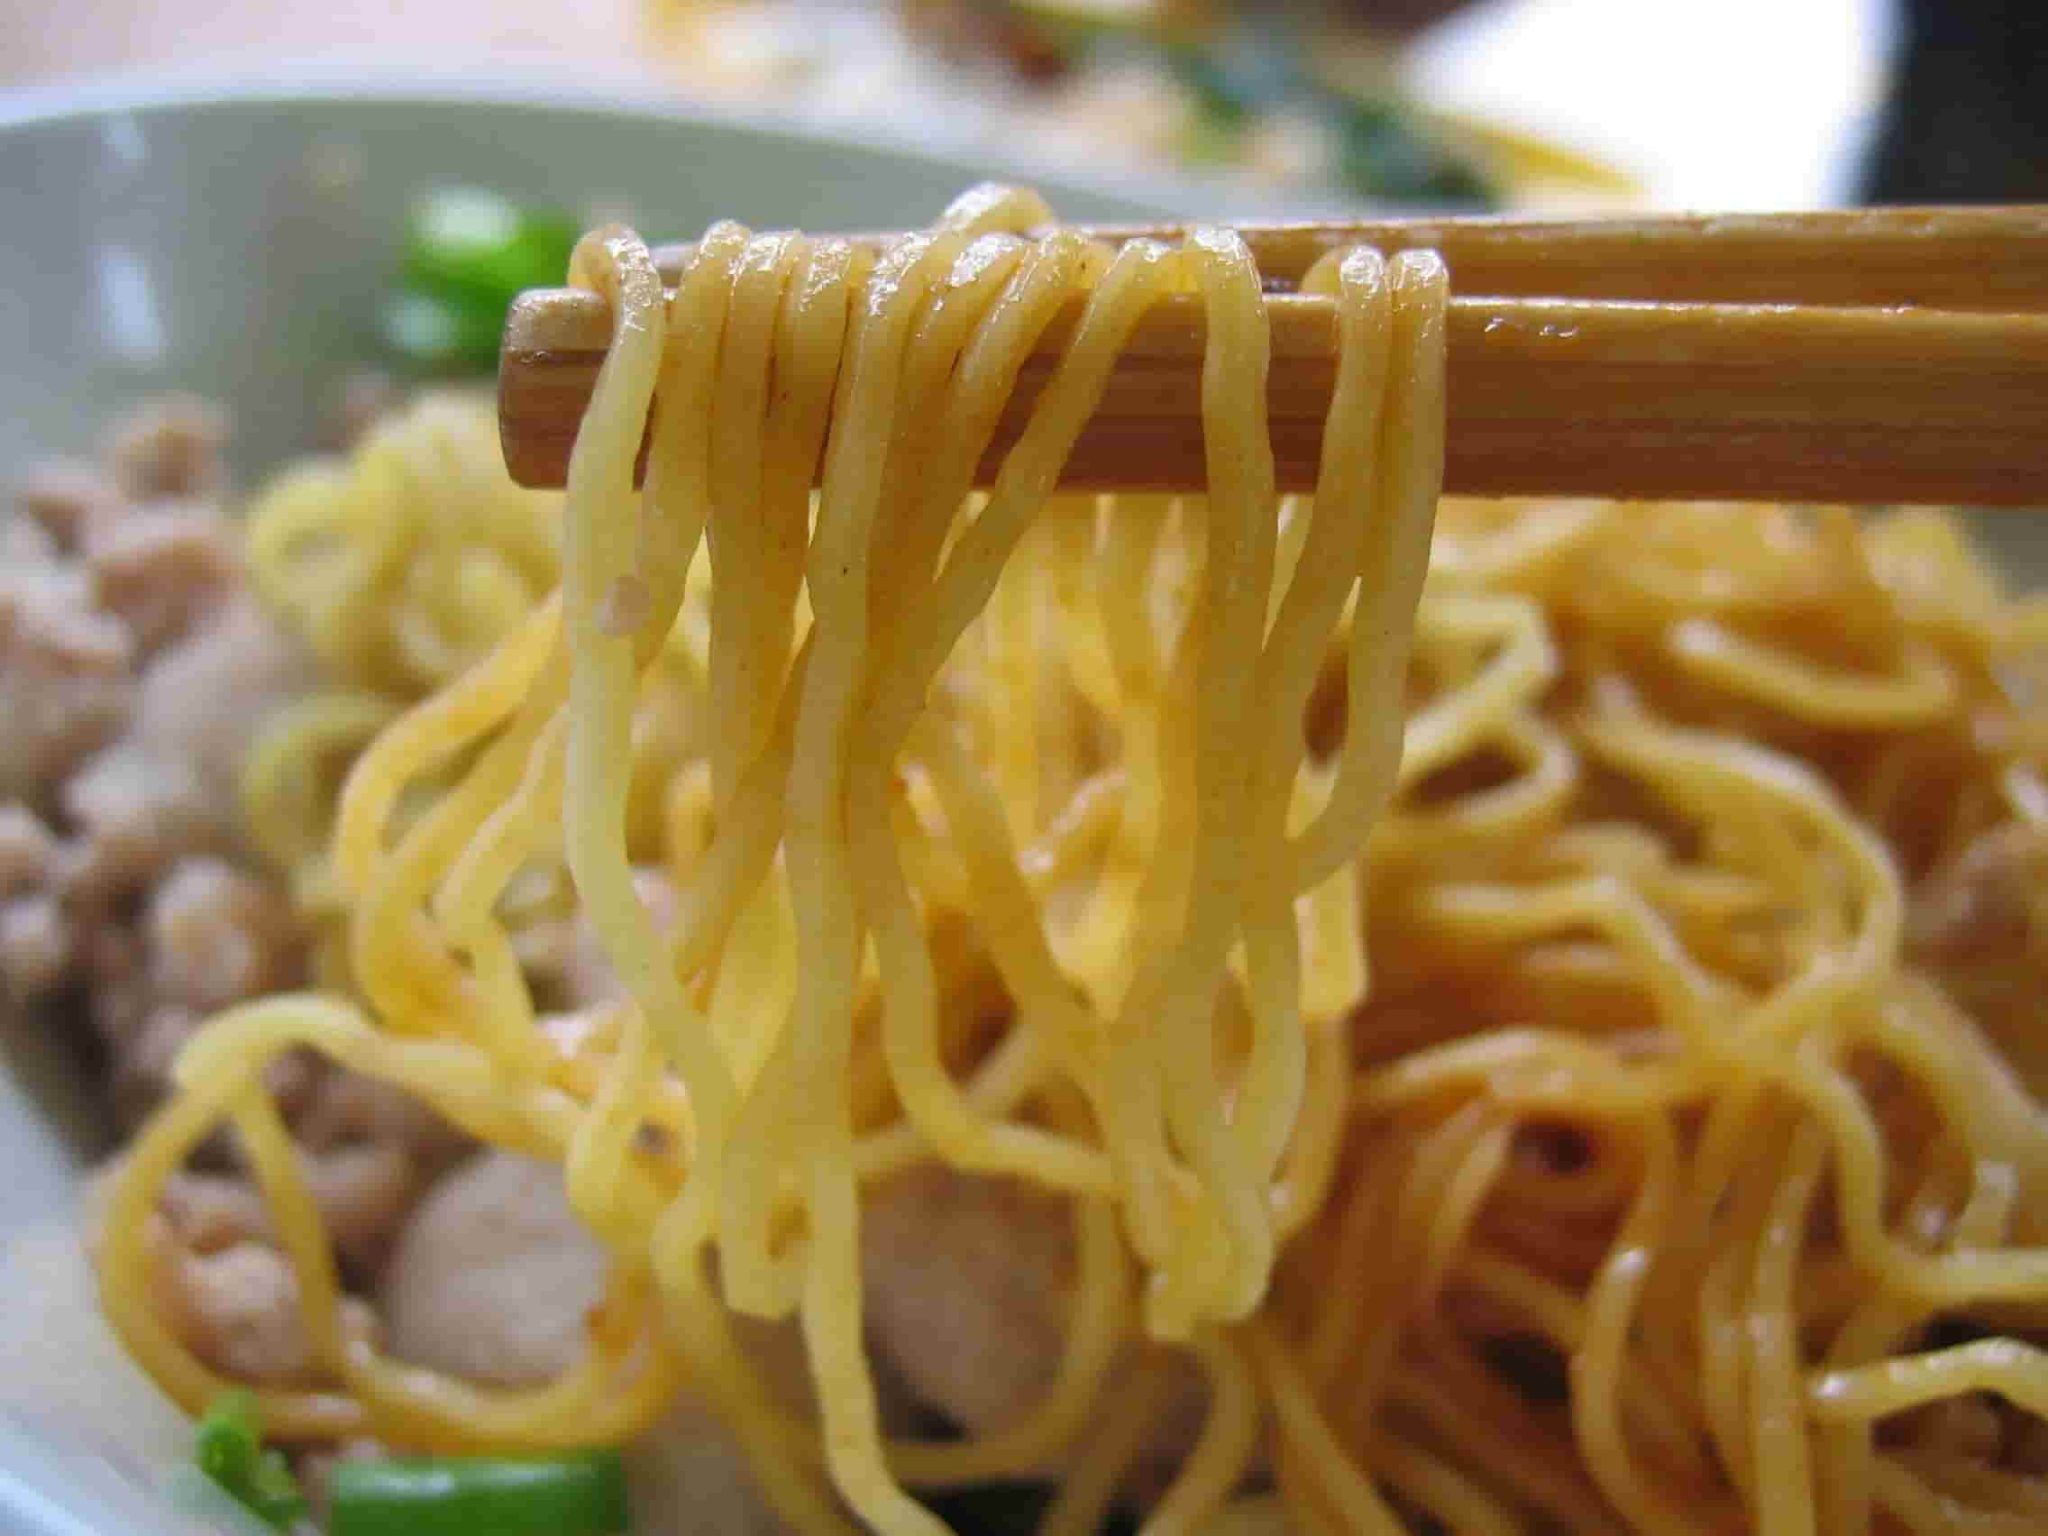 chicken noodle soup crock pot